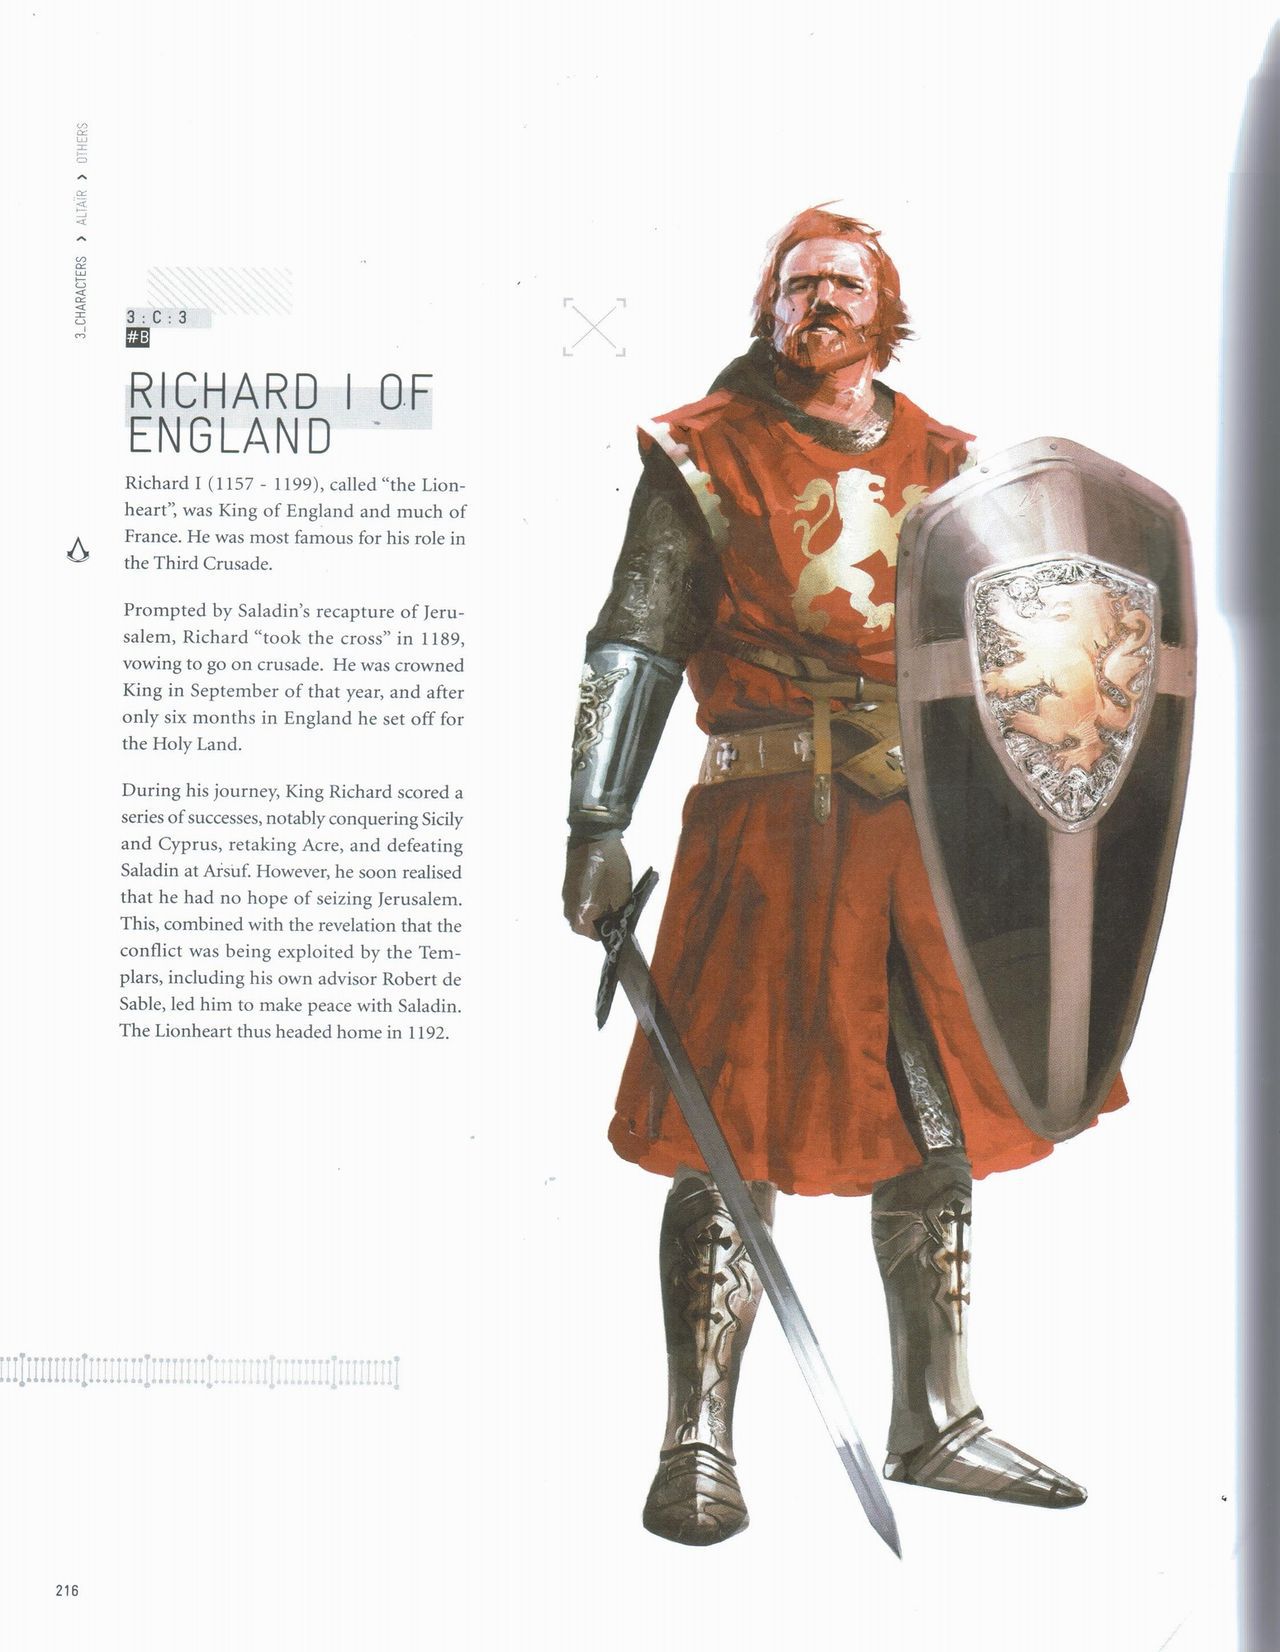 Assassin's Creed Encyclopedia 2.0 217